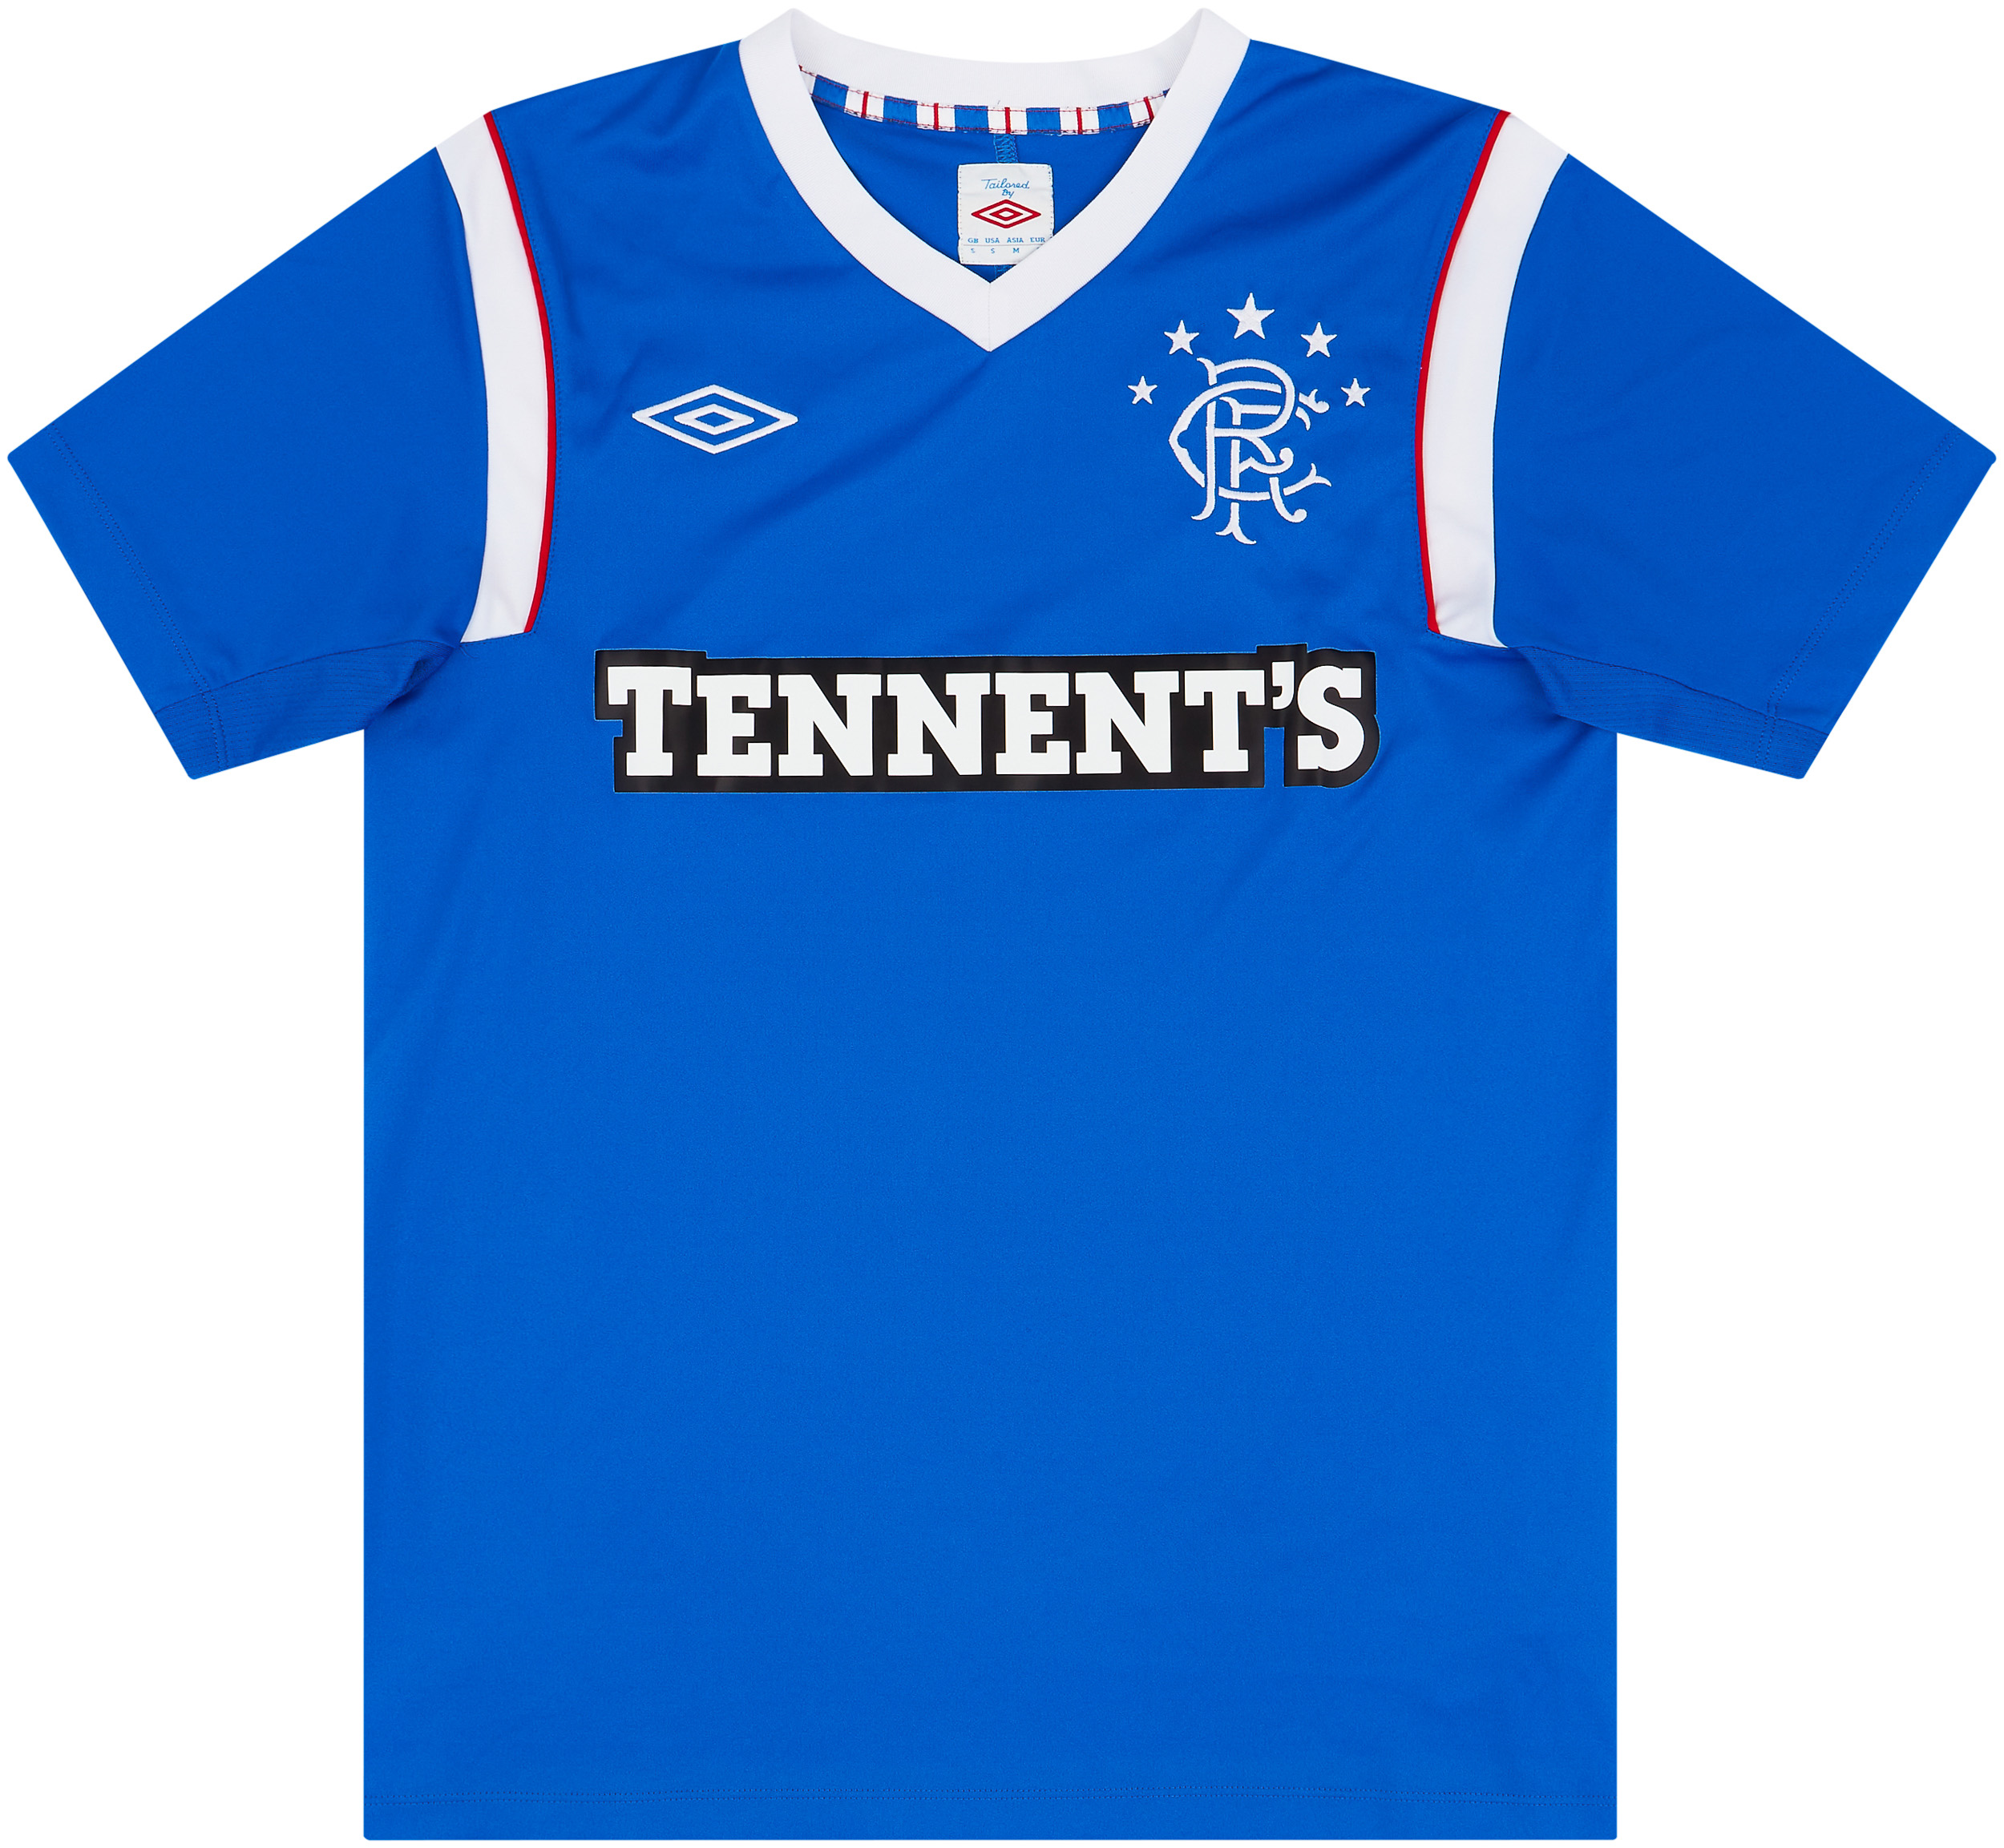 2011-12 Rangers Home Shirt - 8/10 - ()